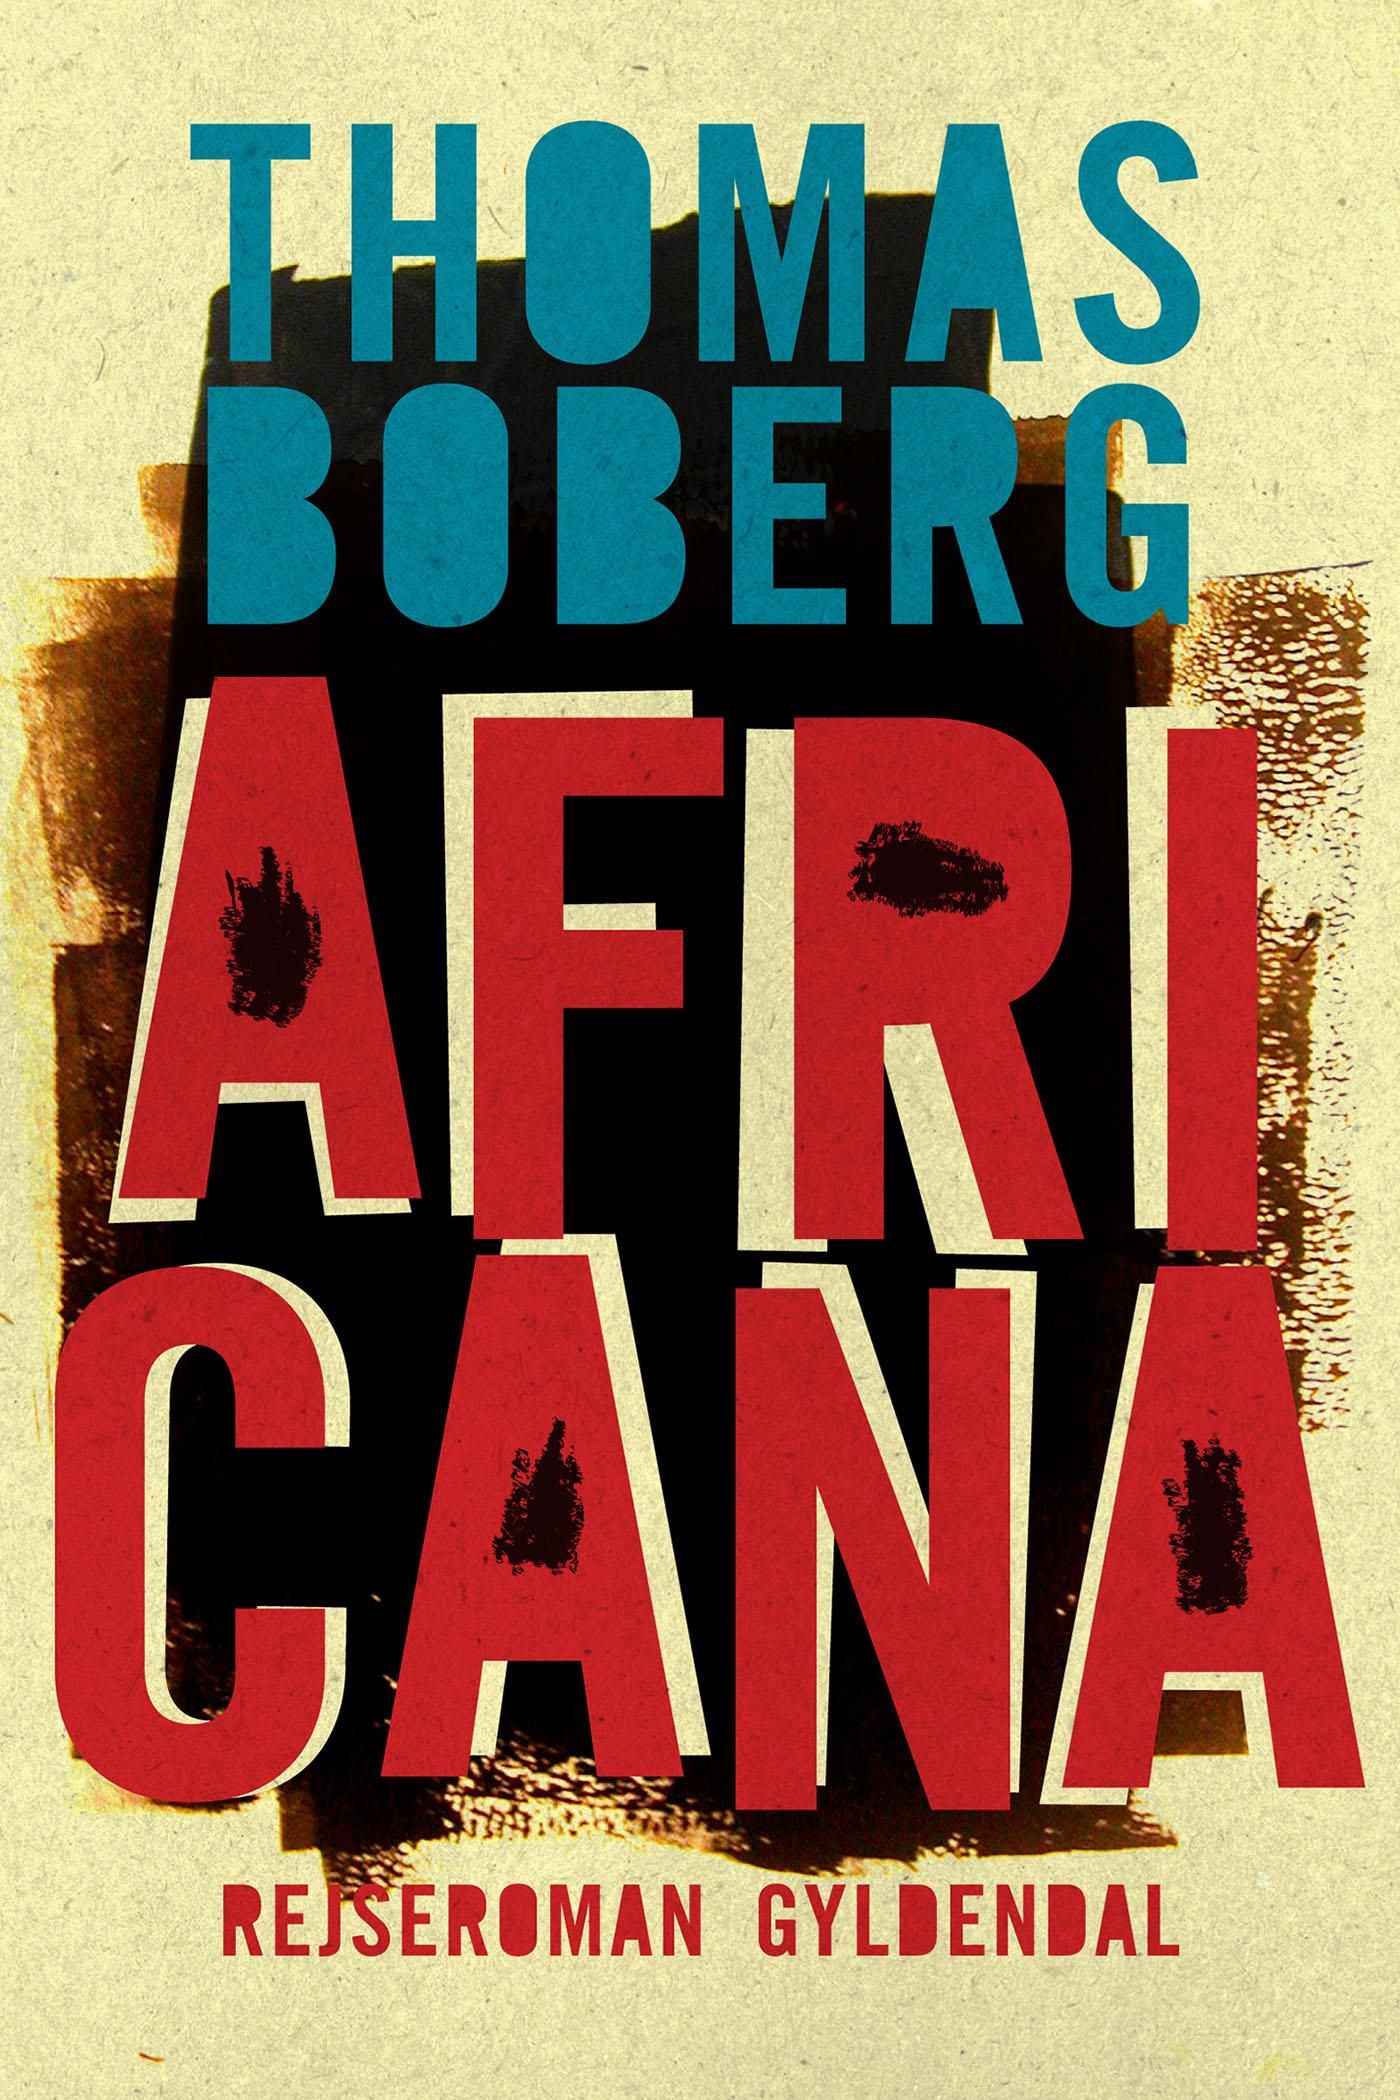 Africana, e-bok av Thomas Boberg